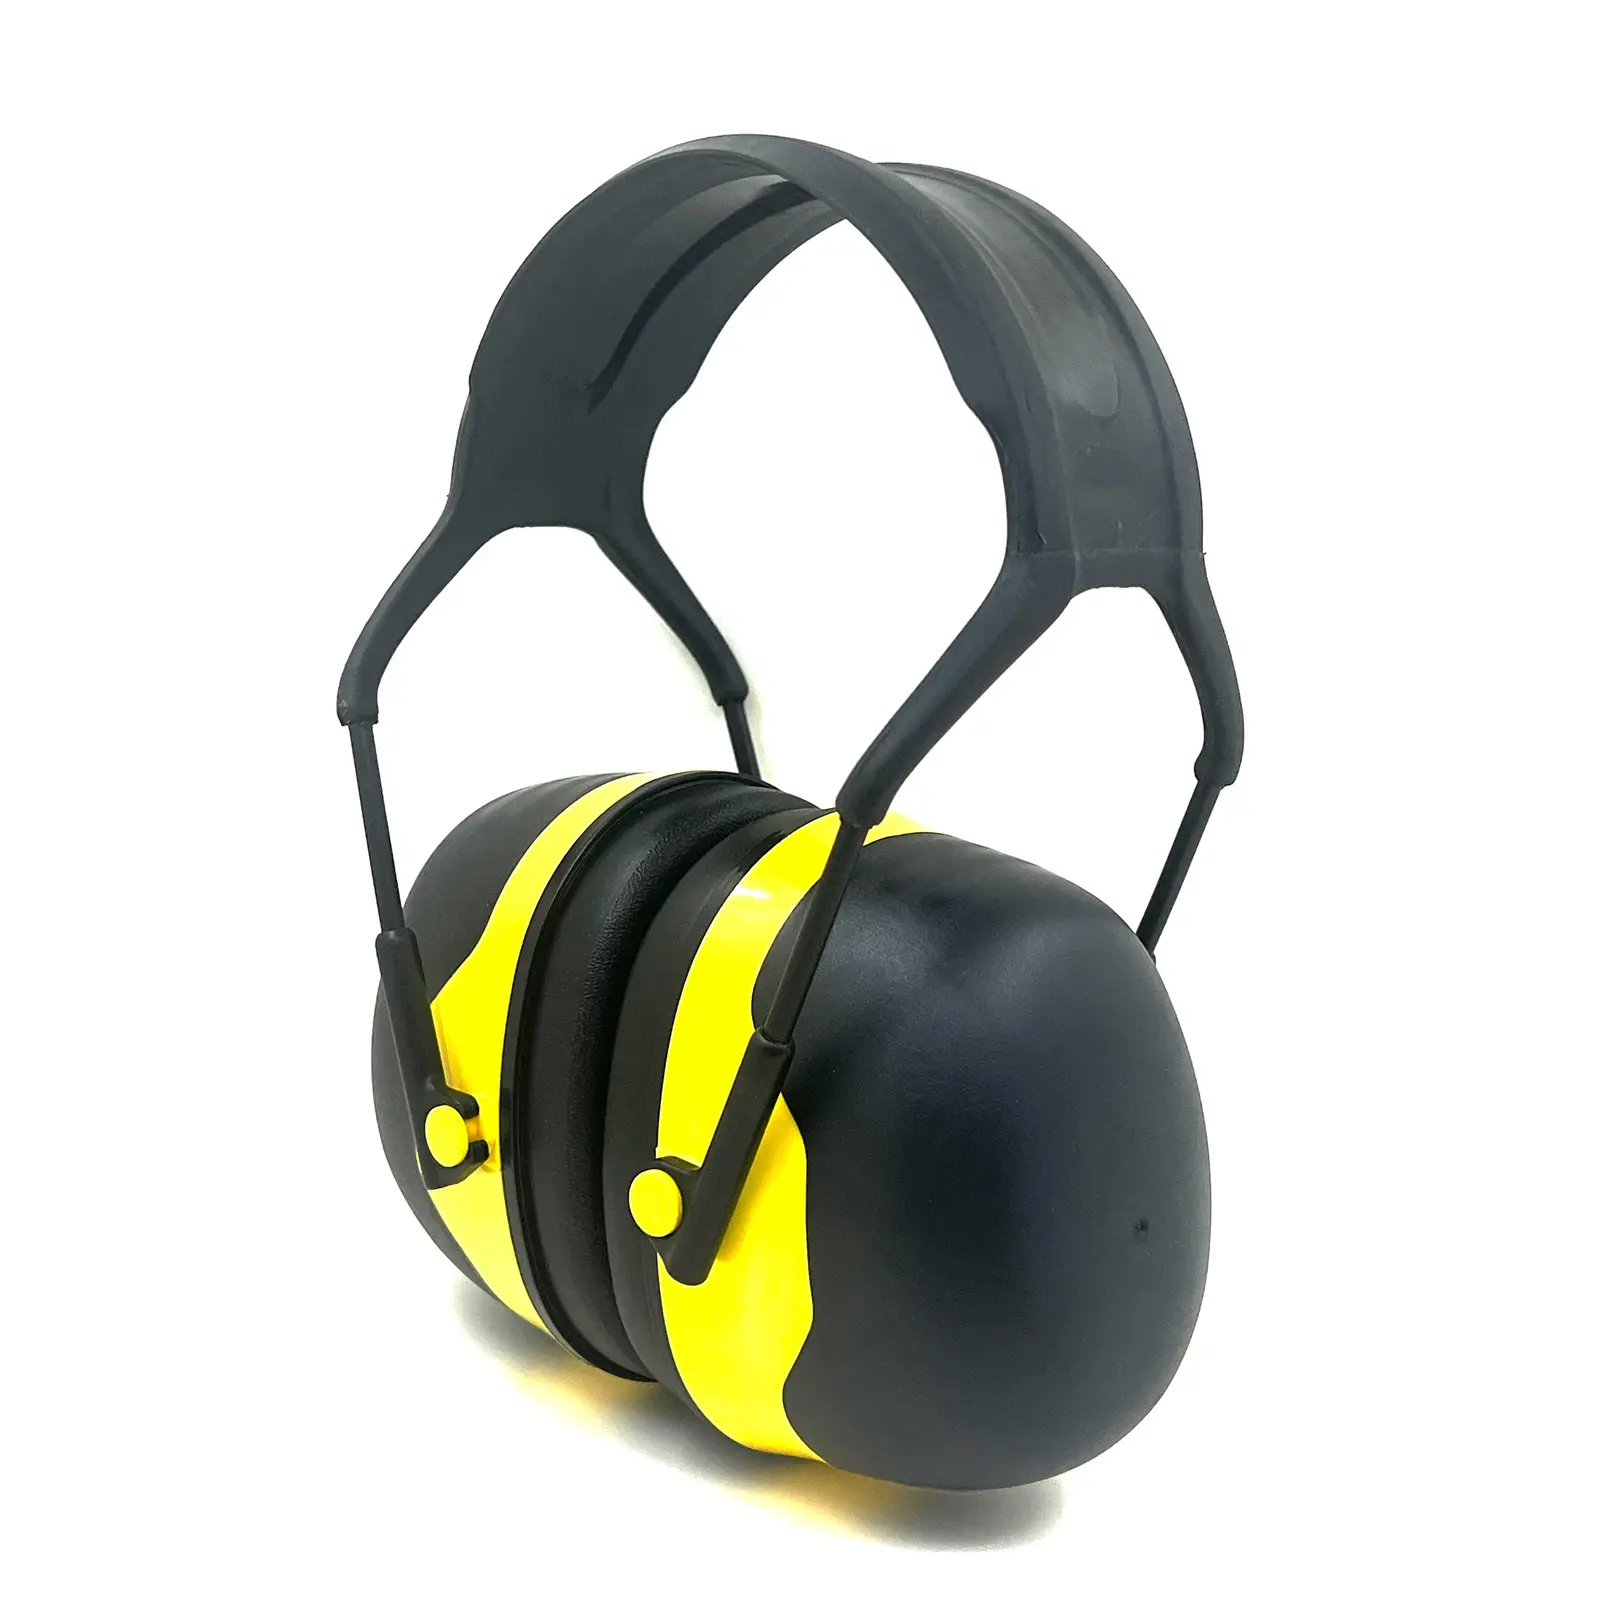 OEM GS13 kulaklıklar 35dB gürültü azaltma güvenlik işitme koruması kişisel savunma ekipmanları